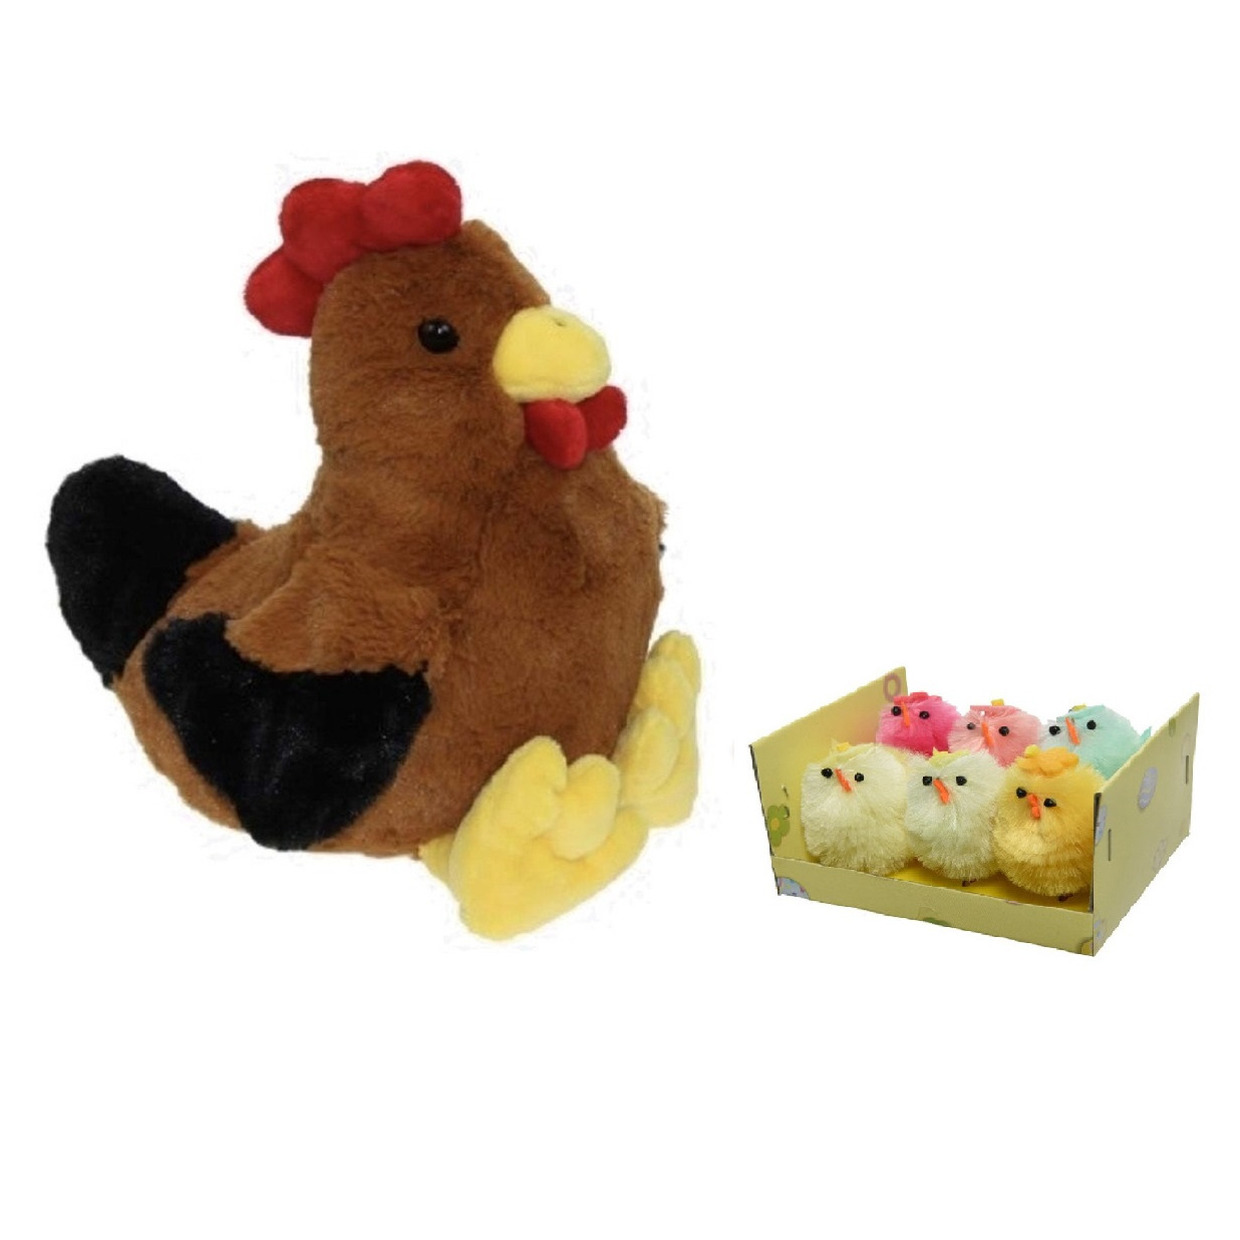 Pluche bruine kippen-hanen knuffel van 25 cm met 6x stuks mini gekleurde kuikentjes 4 cm